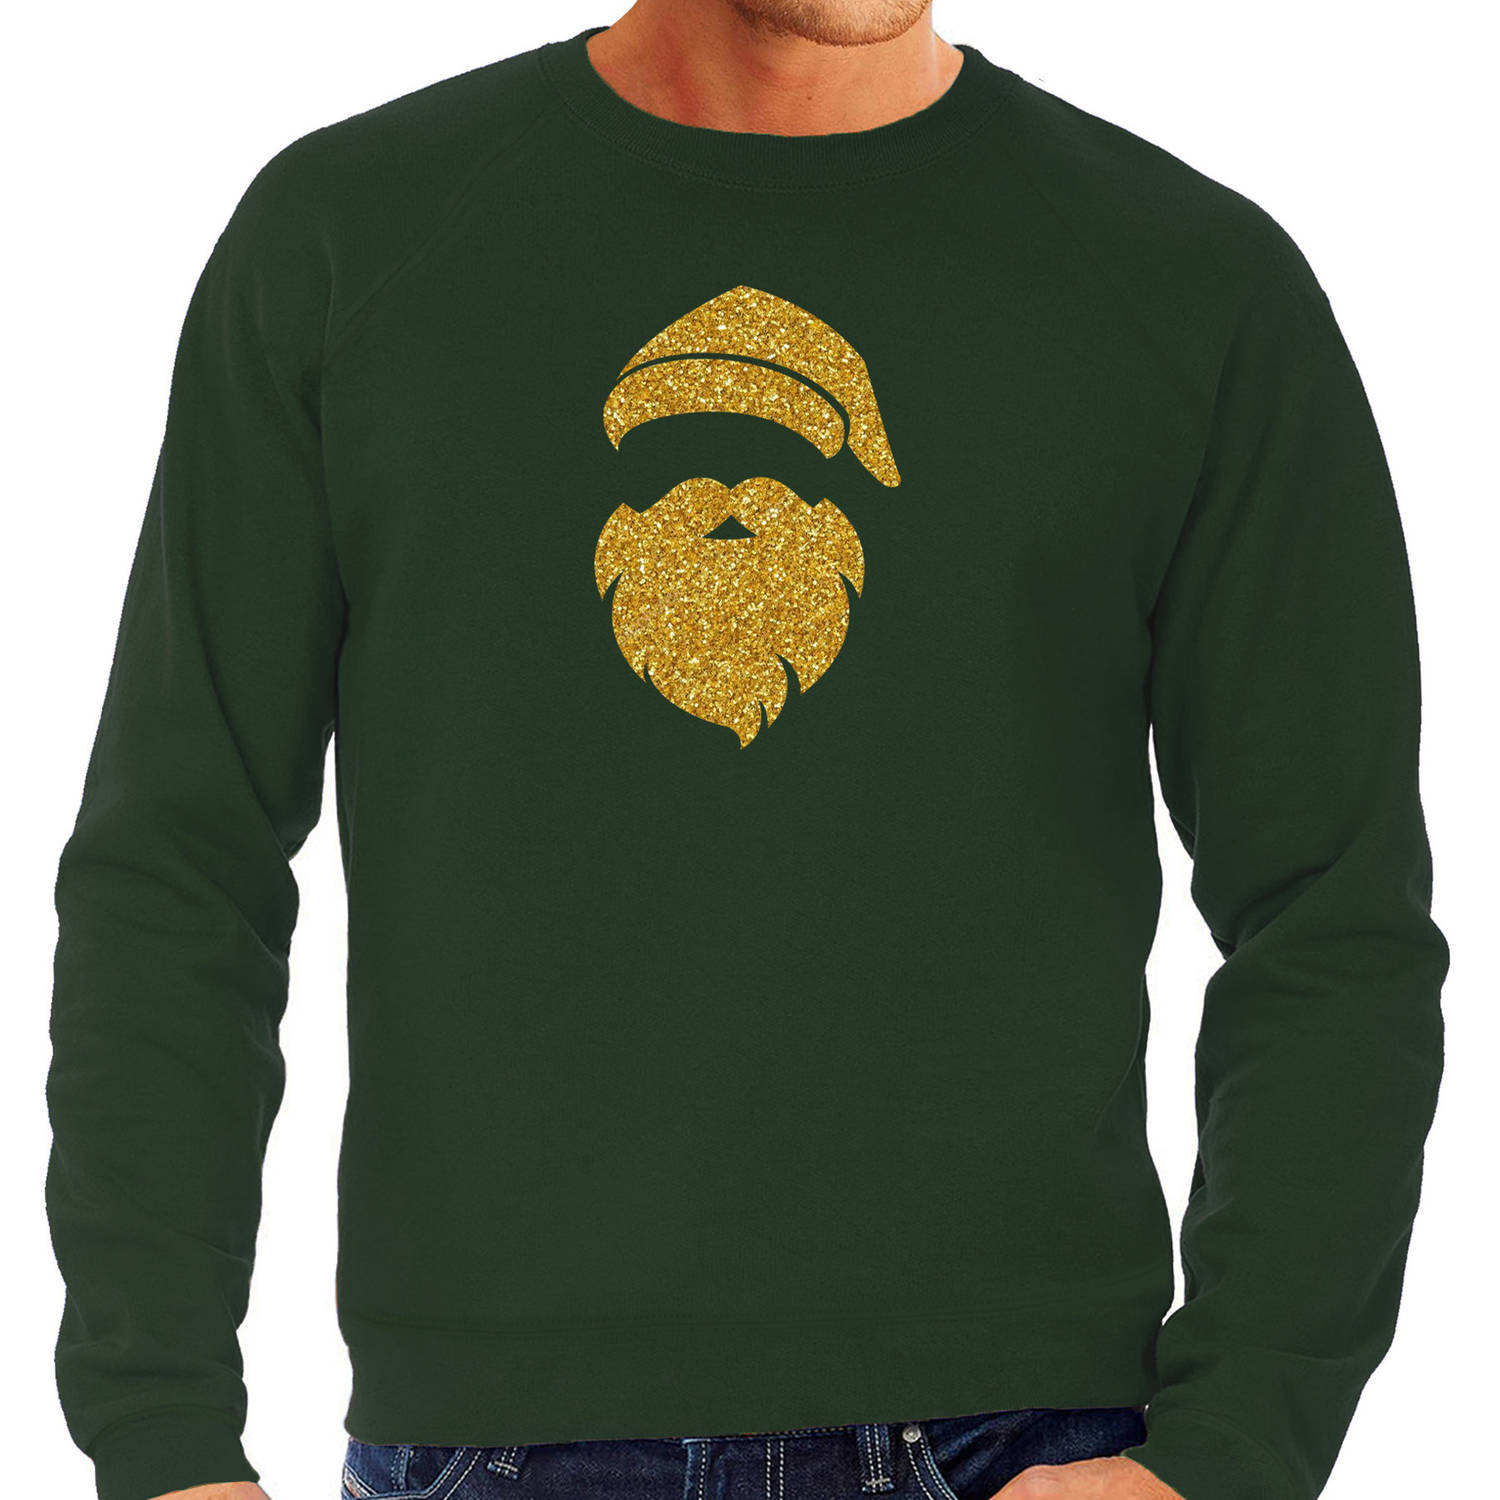 Kerstman hoofd Kerst sweater / trui groen voor heren met gouden glitter bedrukking M - kerst truien